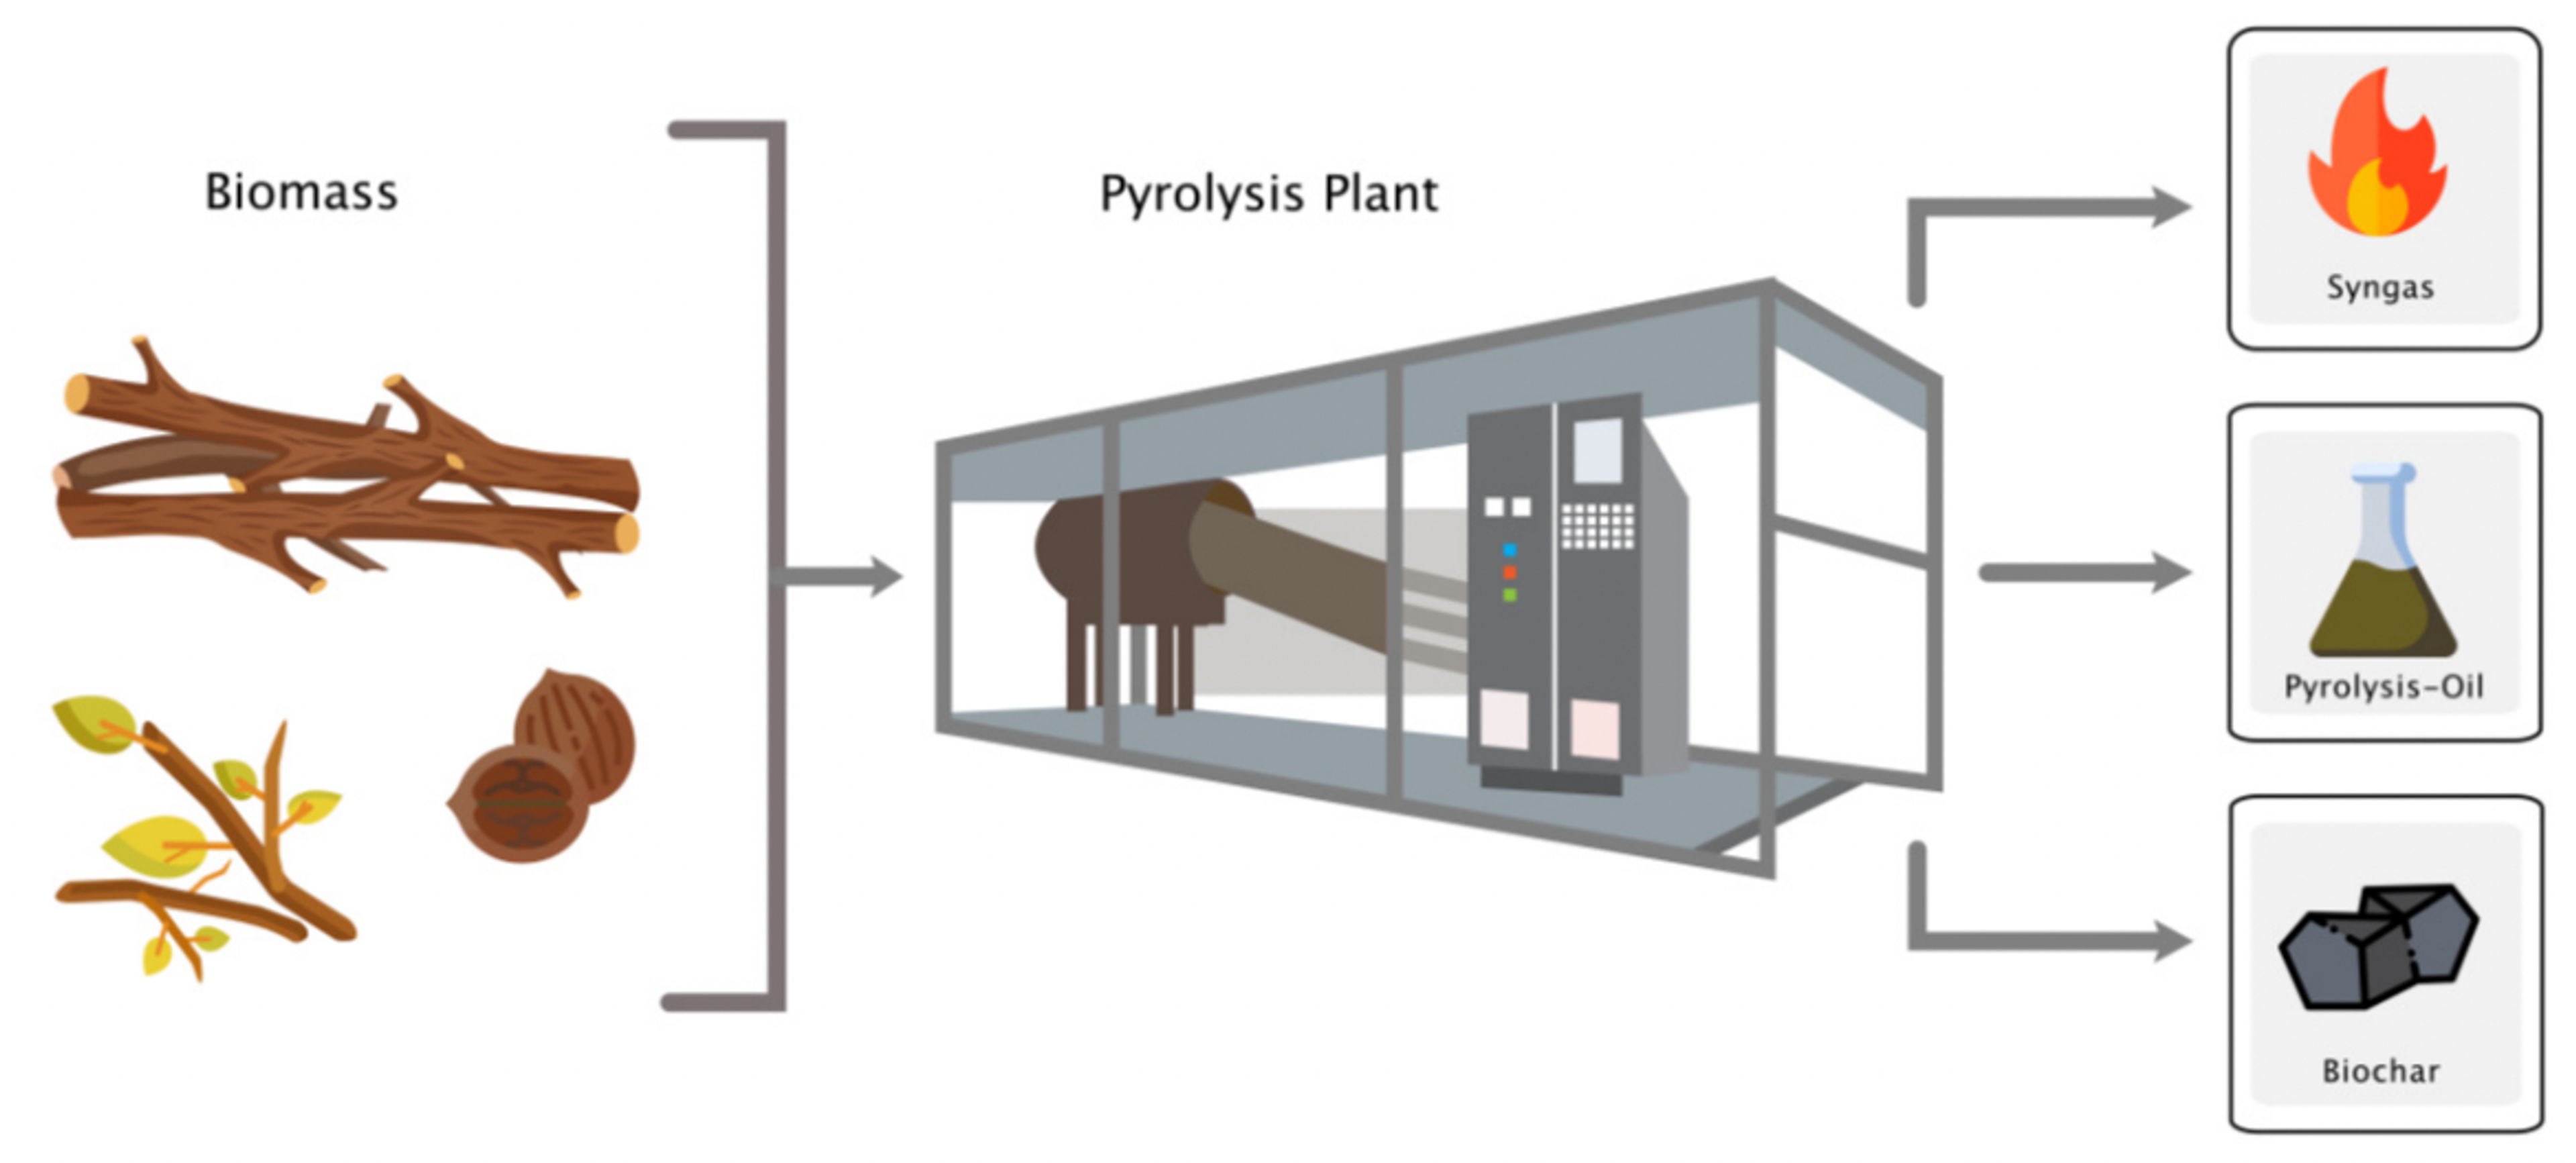 Biochar creation process through pyrolysis